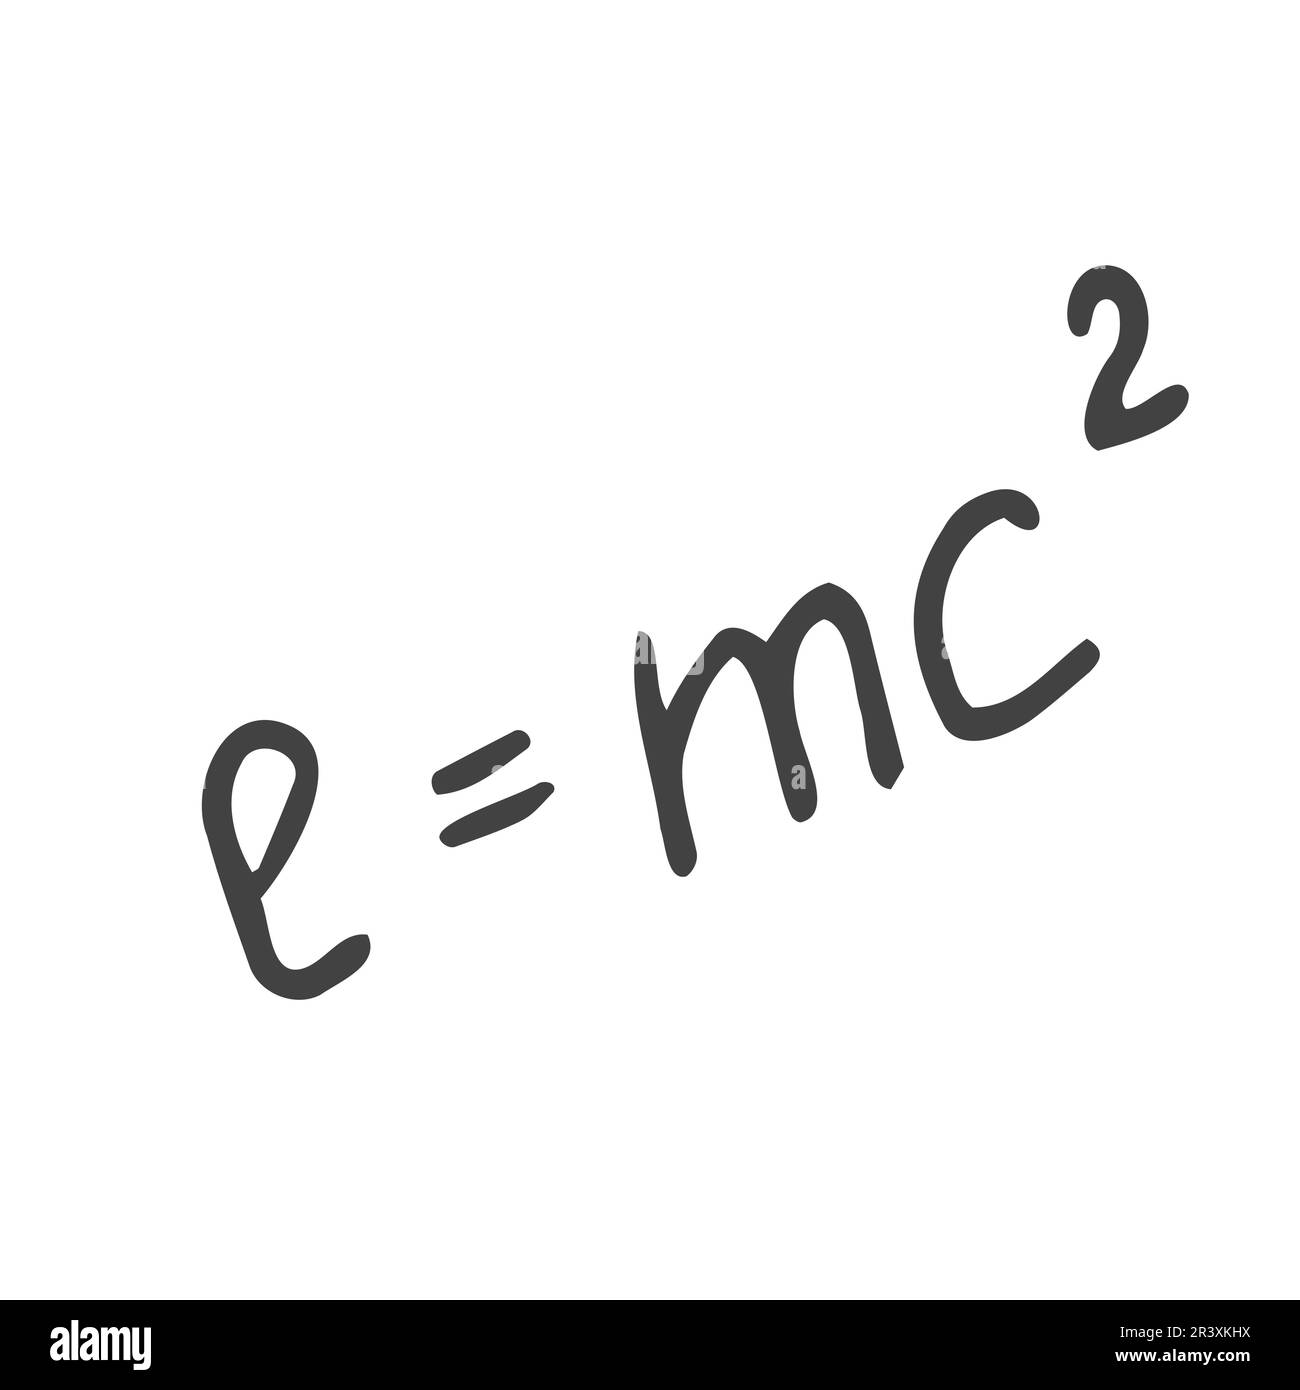 La célèbre formule de la challigraphie E mc2. Formule exprimant l'équivalence Illustration de Vecteur